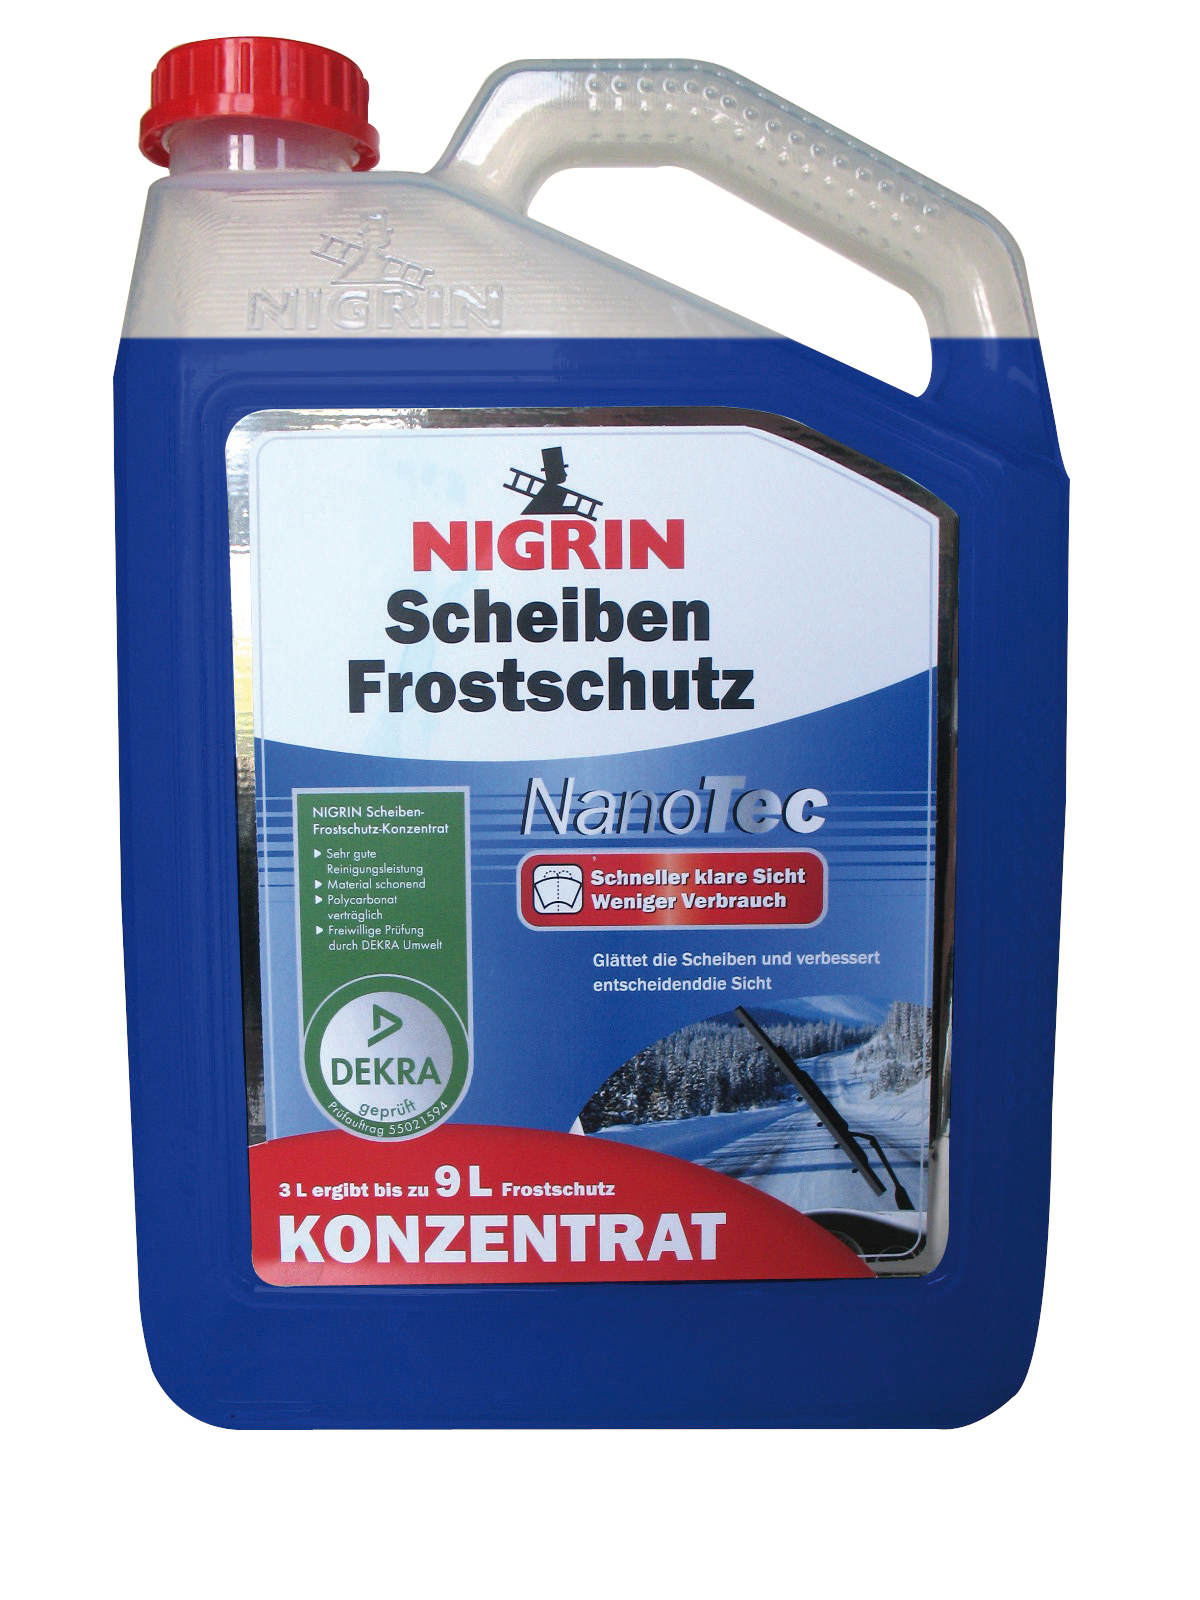 Winterschmutz adé: Der neue Scheibenfrostschutz von NIGRIN, Inter-Union  Technohandel GmbH, Story - PresseBox